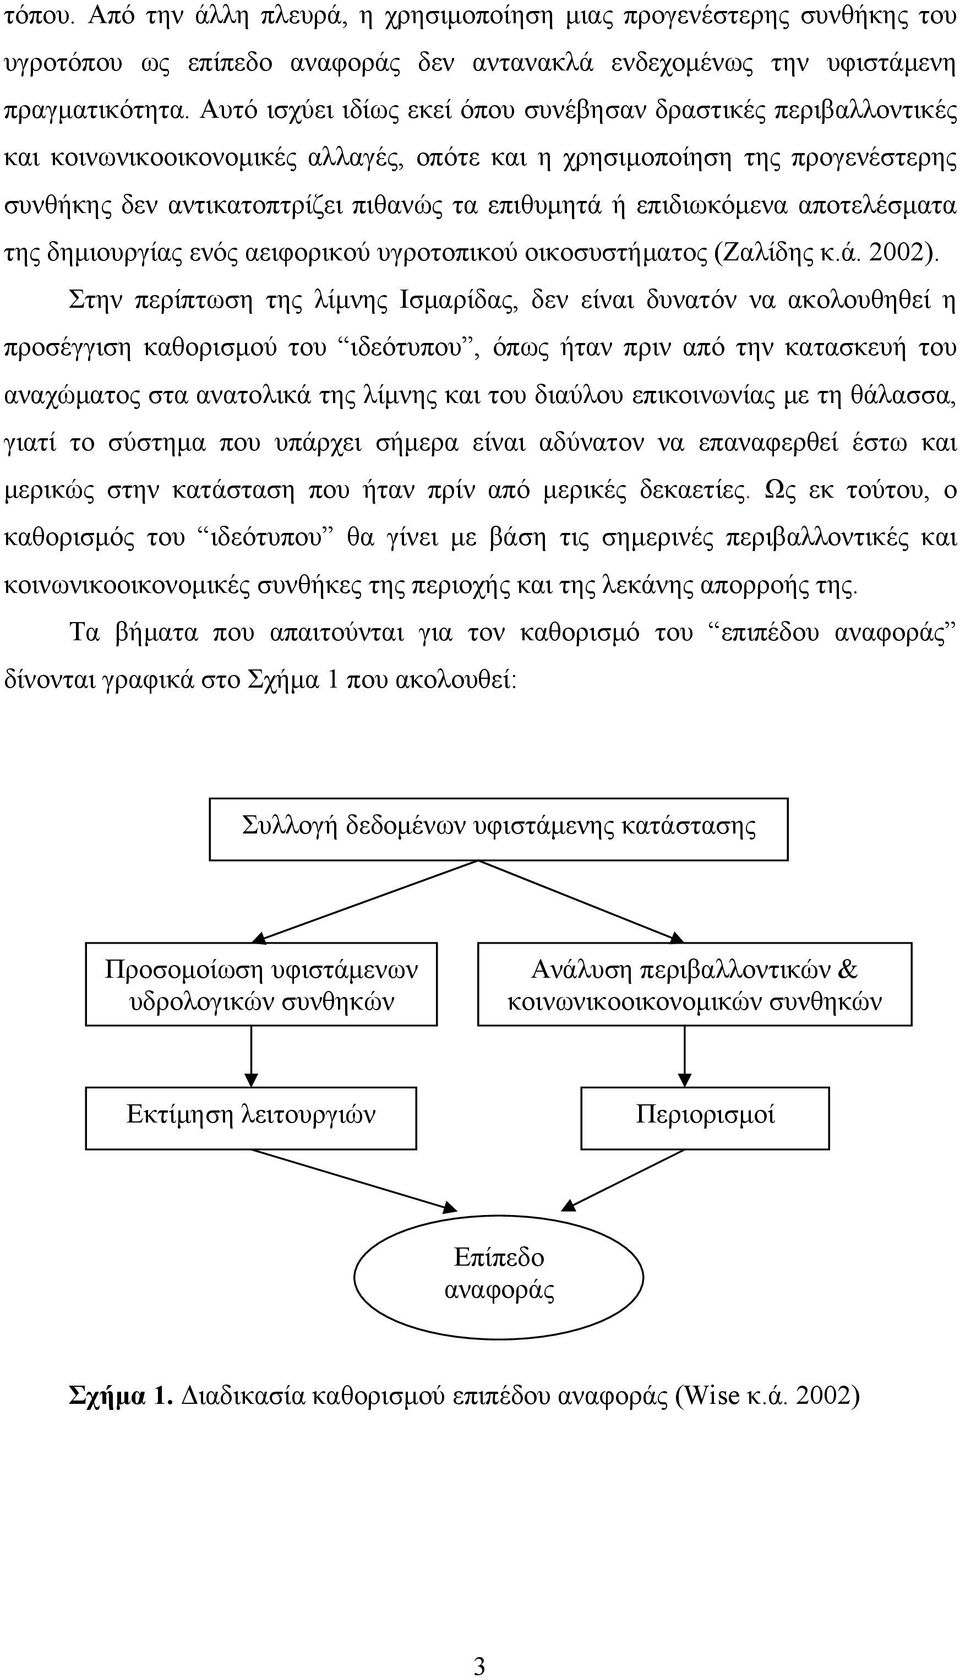 επιδιωκόμενα αποτελέσματα της δημιουργίας ενός αειφορικού υγροτοπικού οικοσυστήματος (Ζαλίδης κ.ά. 2002).